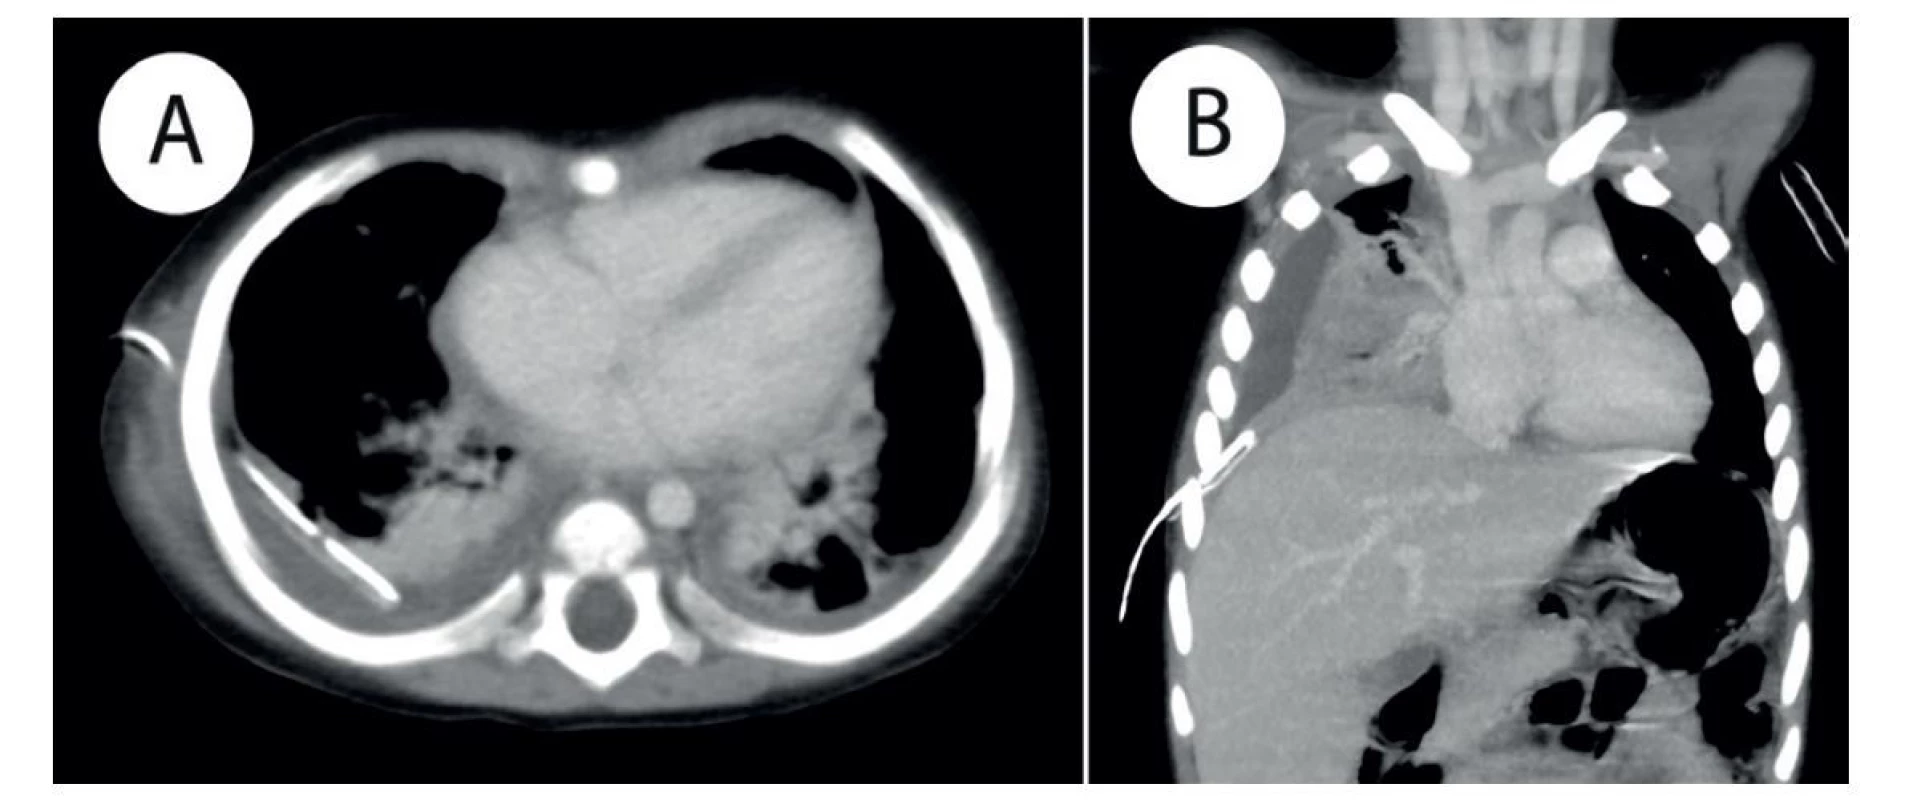 a) CT vyšetření po podání KL, tra rekonstrukce − pravostranná pleuropneumonie s pleurálním výpotkem a dorzálně
zavedeným hrudním drénem; b) CT vyšetření po podání KL, cor MIP rekonstrukce − pravostranná pleuropneumonie s pleurálním
výpotkem a zavedeným hrudním drénem.<br>
Fig. 2: a) Postcontrast CT examination, tra reconstruction − right sided pleuropneumonia with pleural effusion and chest
tube placed in the posterior pleural recess; b) postcontrast CT examination, cor MIP reconstruction − right sided pleuropneumonia
with pleural effusion; chest tube in place.